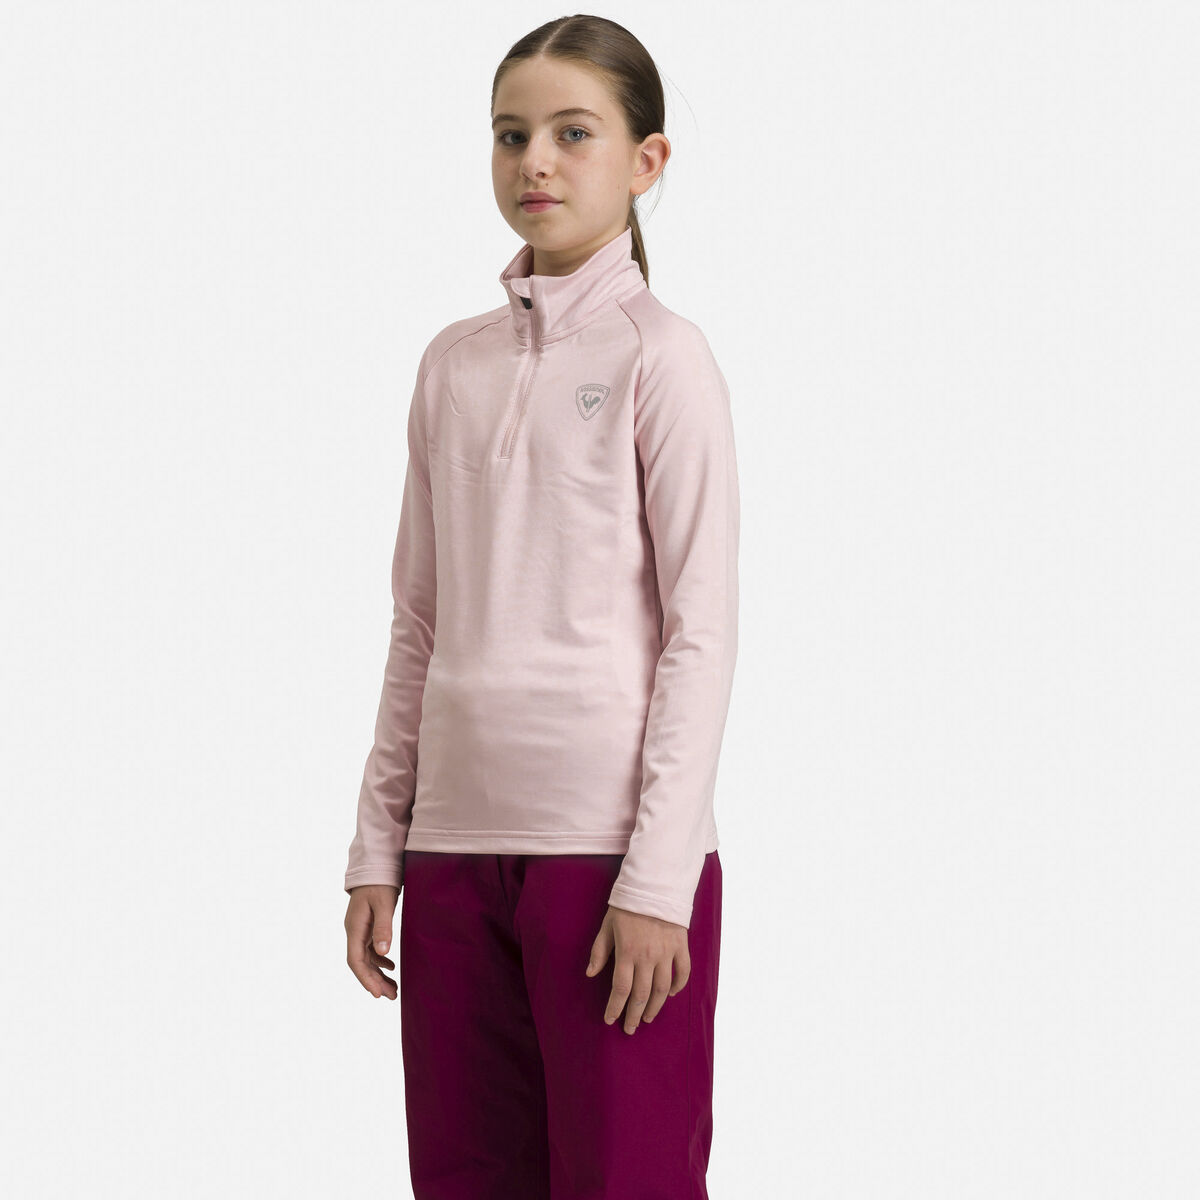 Rossignol Girls' Half-Zip Stretch Fleece Midlayer pinkpurple